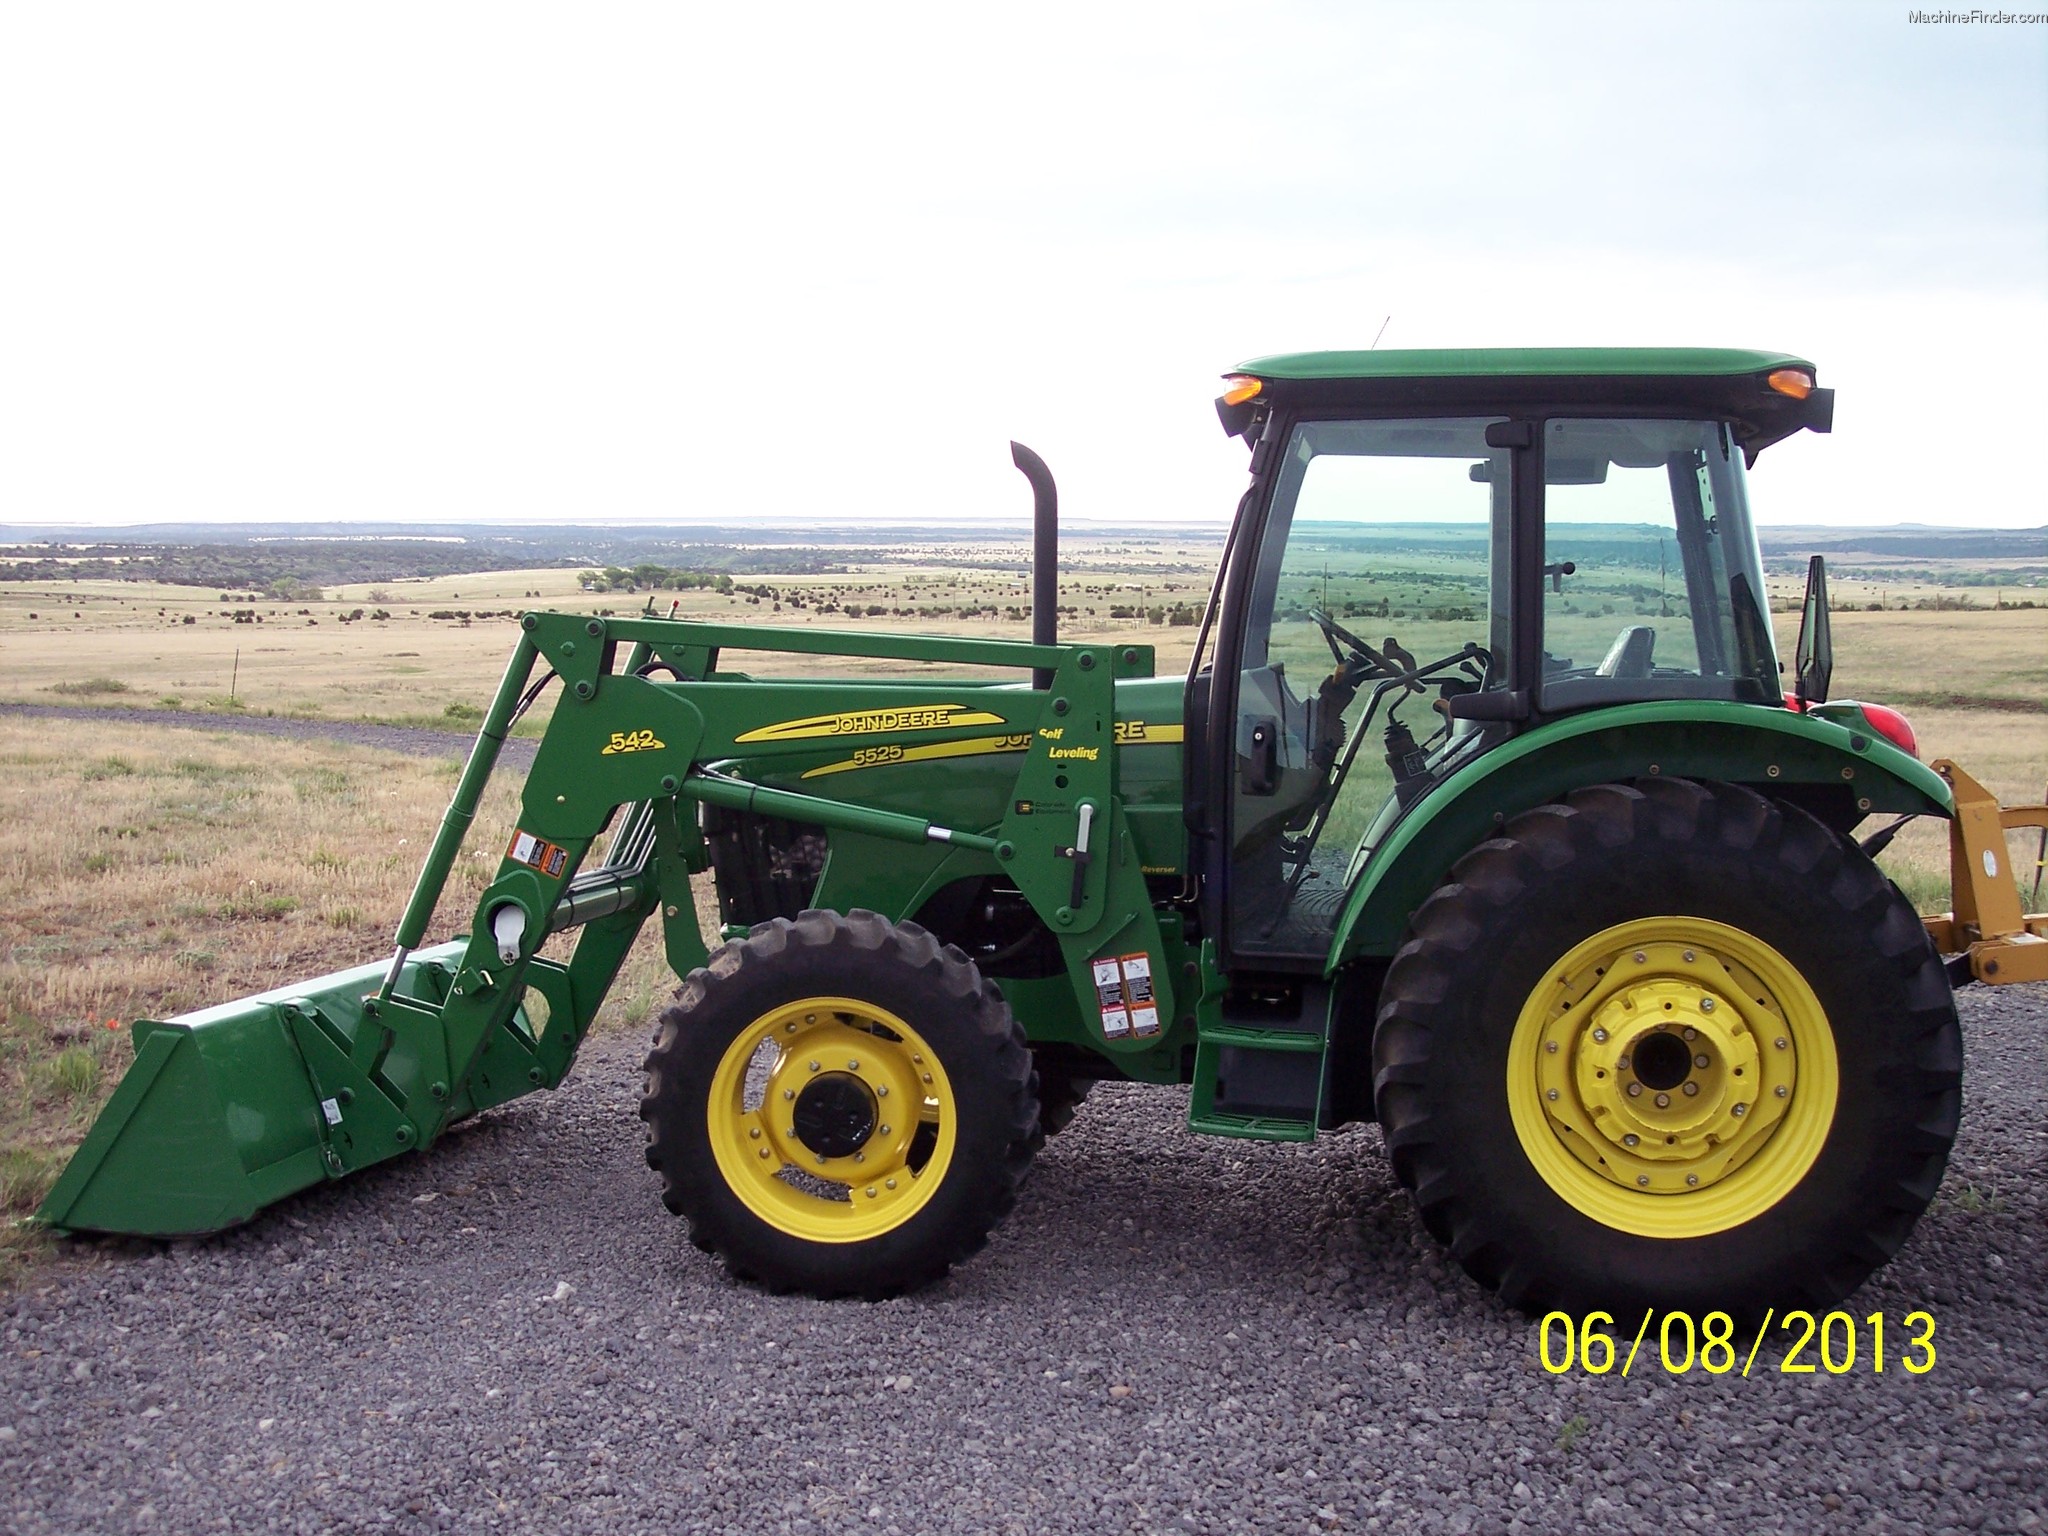 2008 John Deere 5525 Tractors - Utility (40-100hp) - John Deere ...